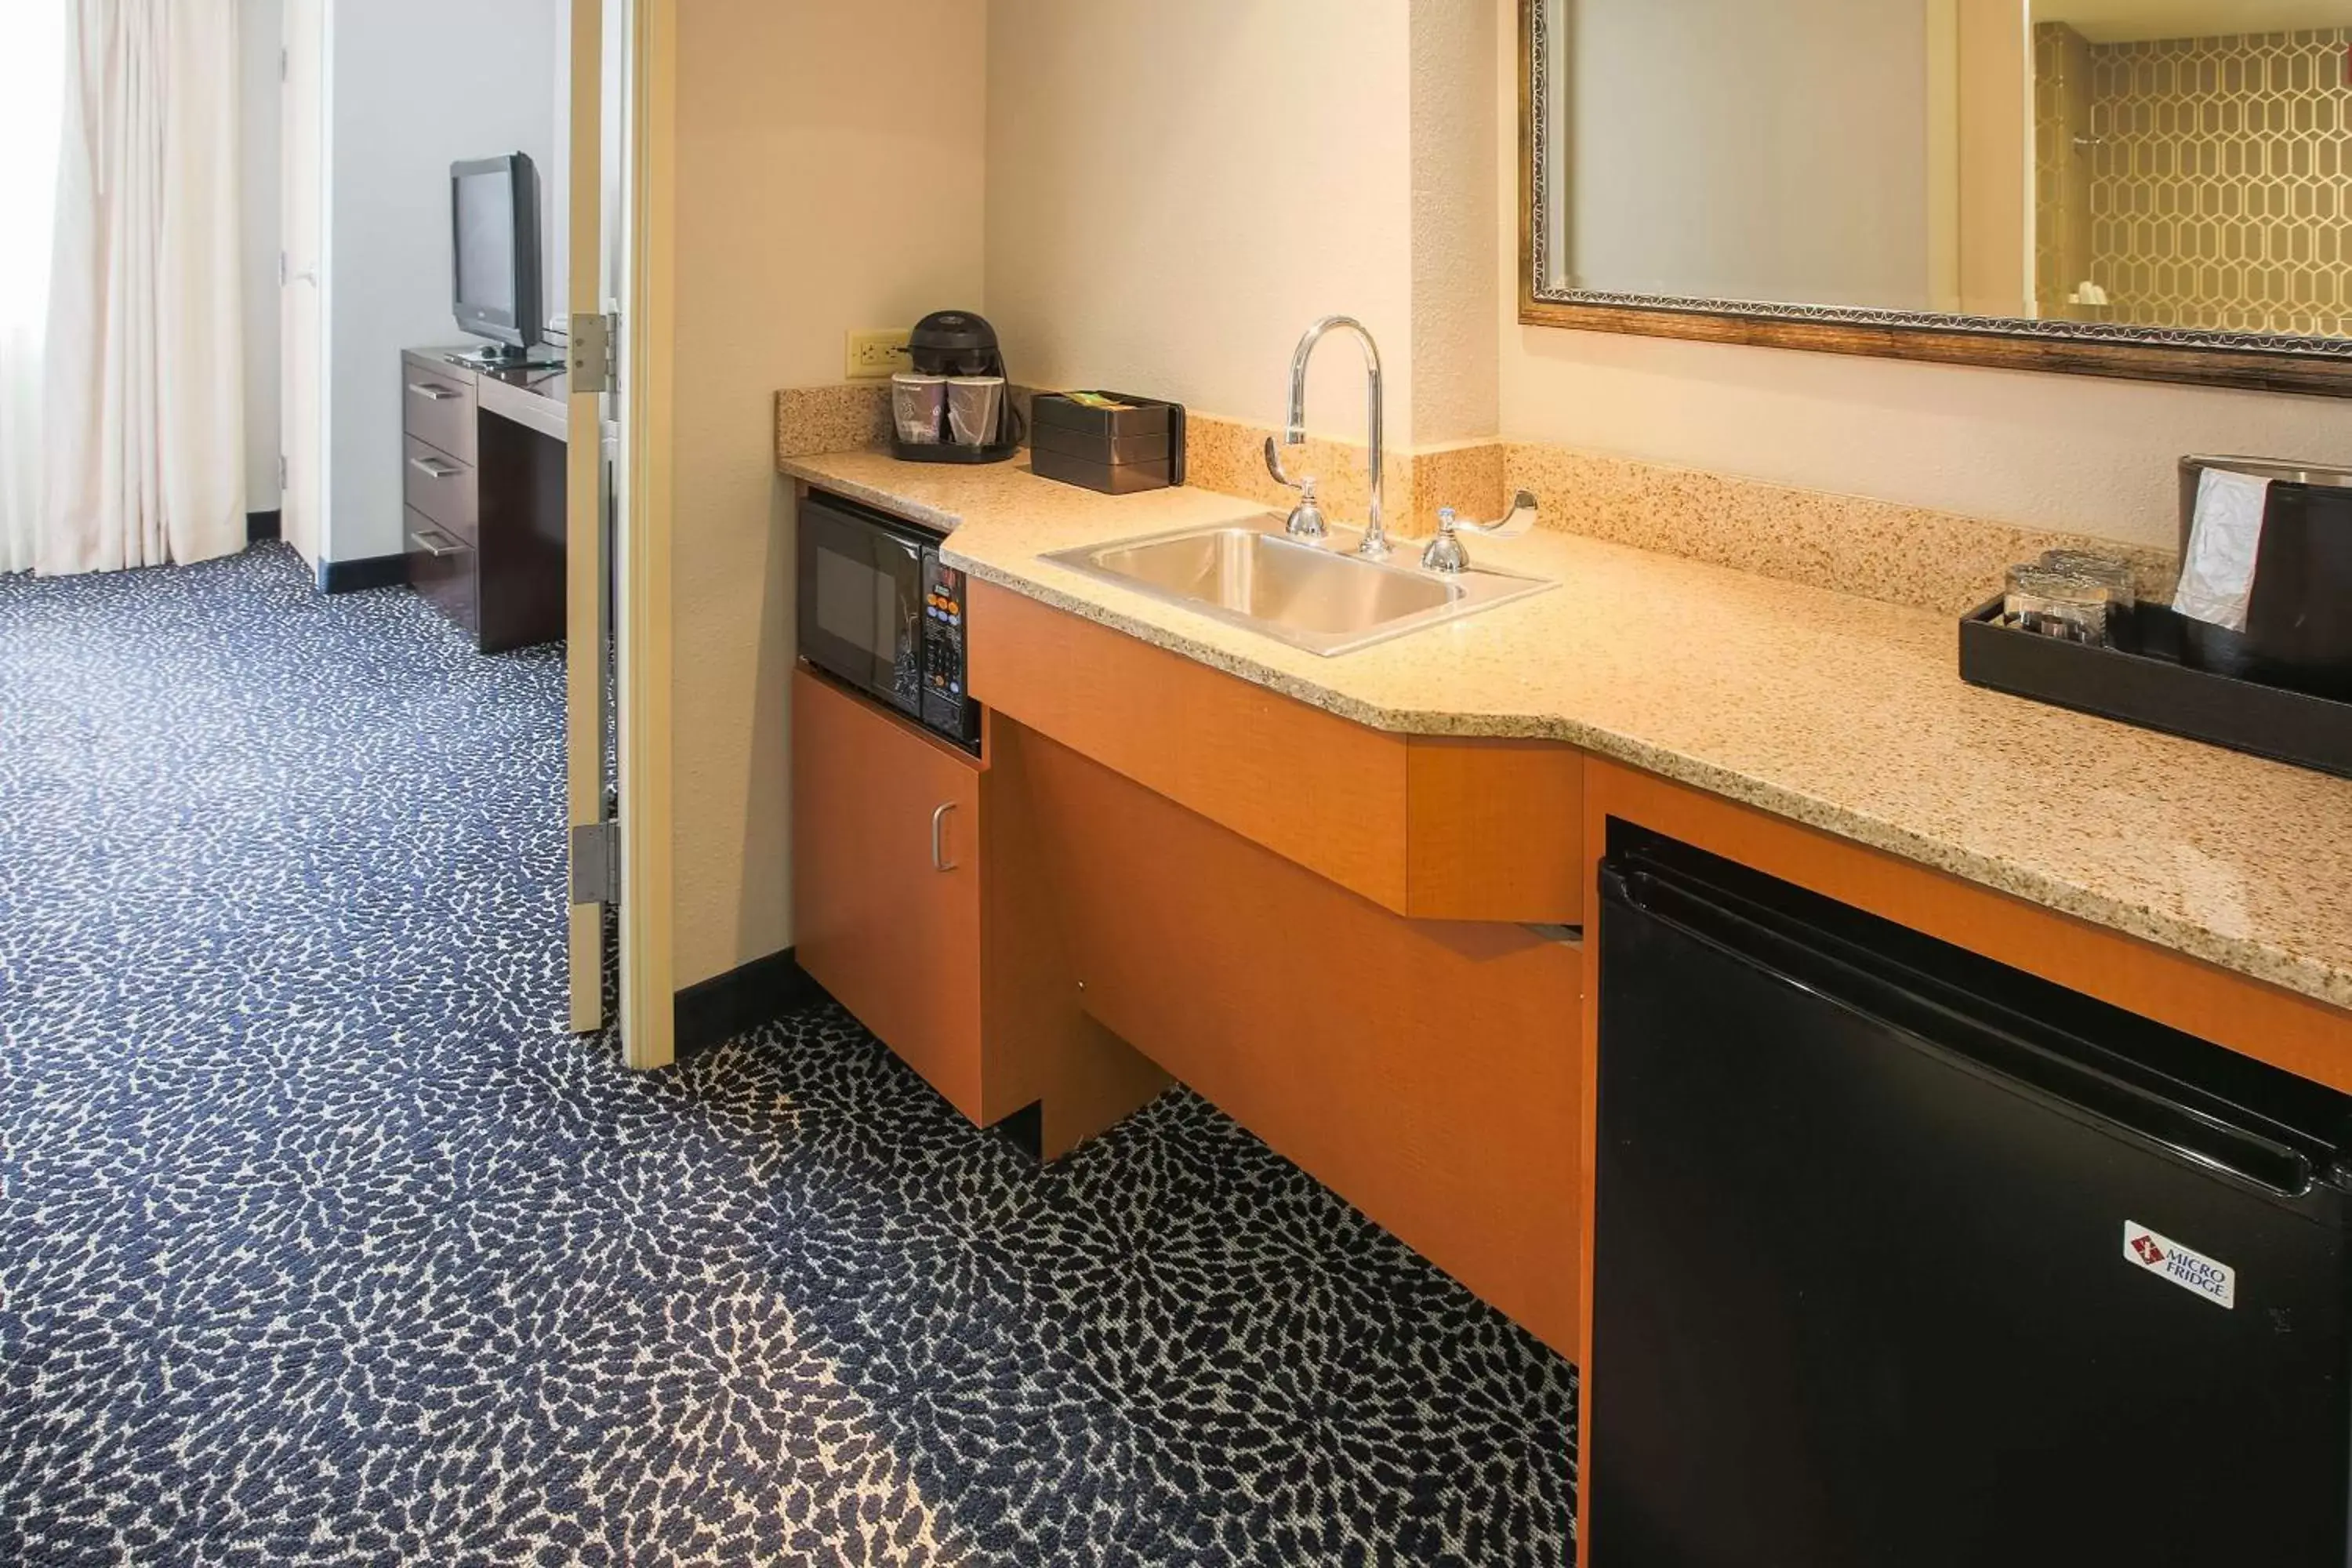 Bedroom, Bathroom in Embassy Suites by Hilton Louisville East